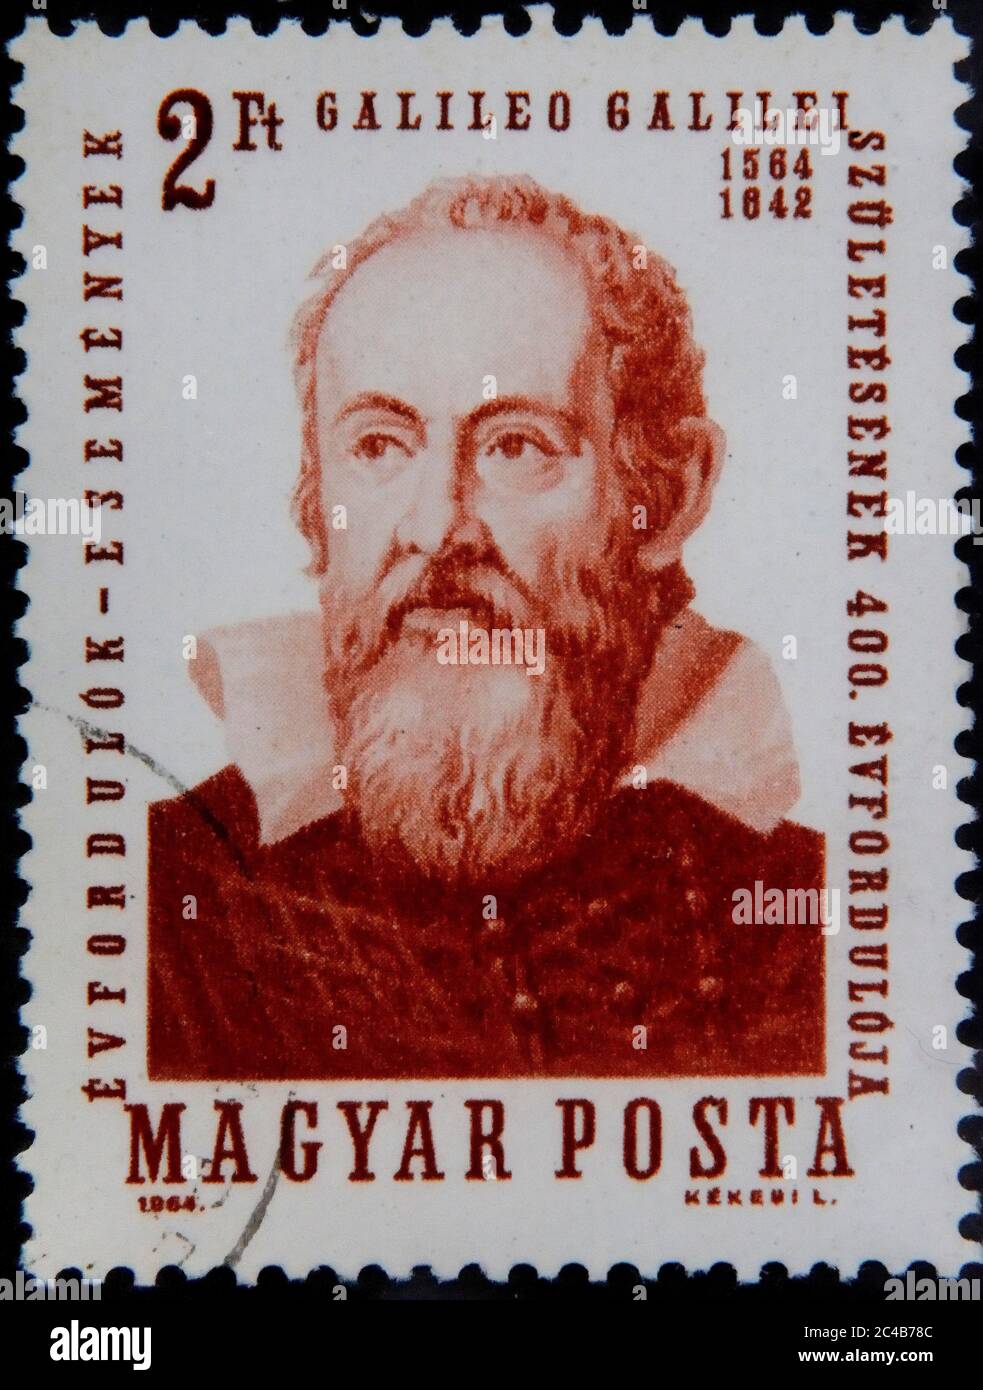 Galileo Galilei, 1564-1642, astronome italien, mathématicien, physicien, philosophe et professeur, portrait sur timbre hongrois, Hongrie Banque D'Images